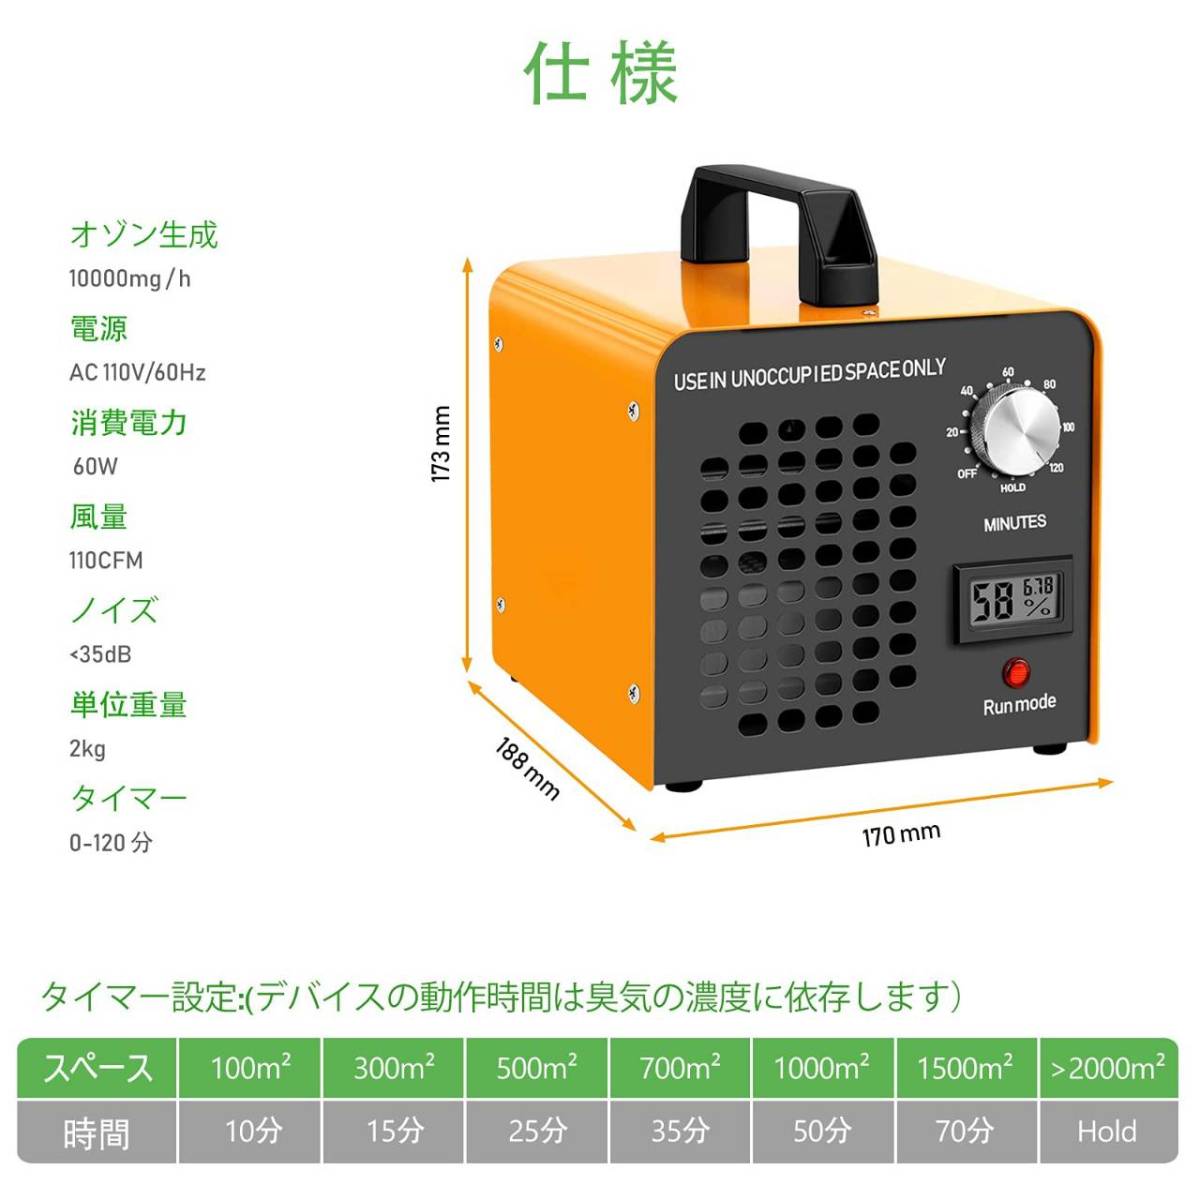 小型で効果的な消臭効果を持つ家庭用オゾン空気清浄機